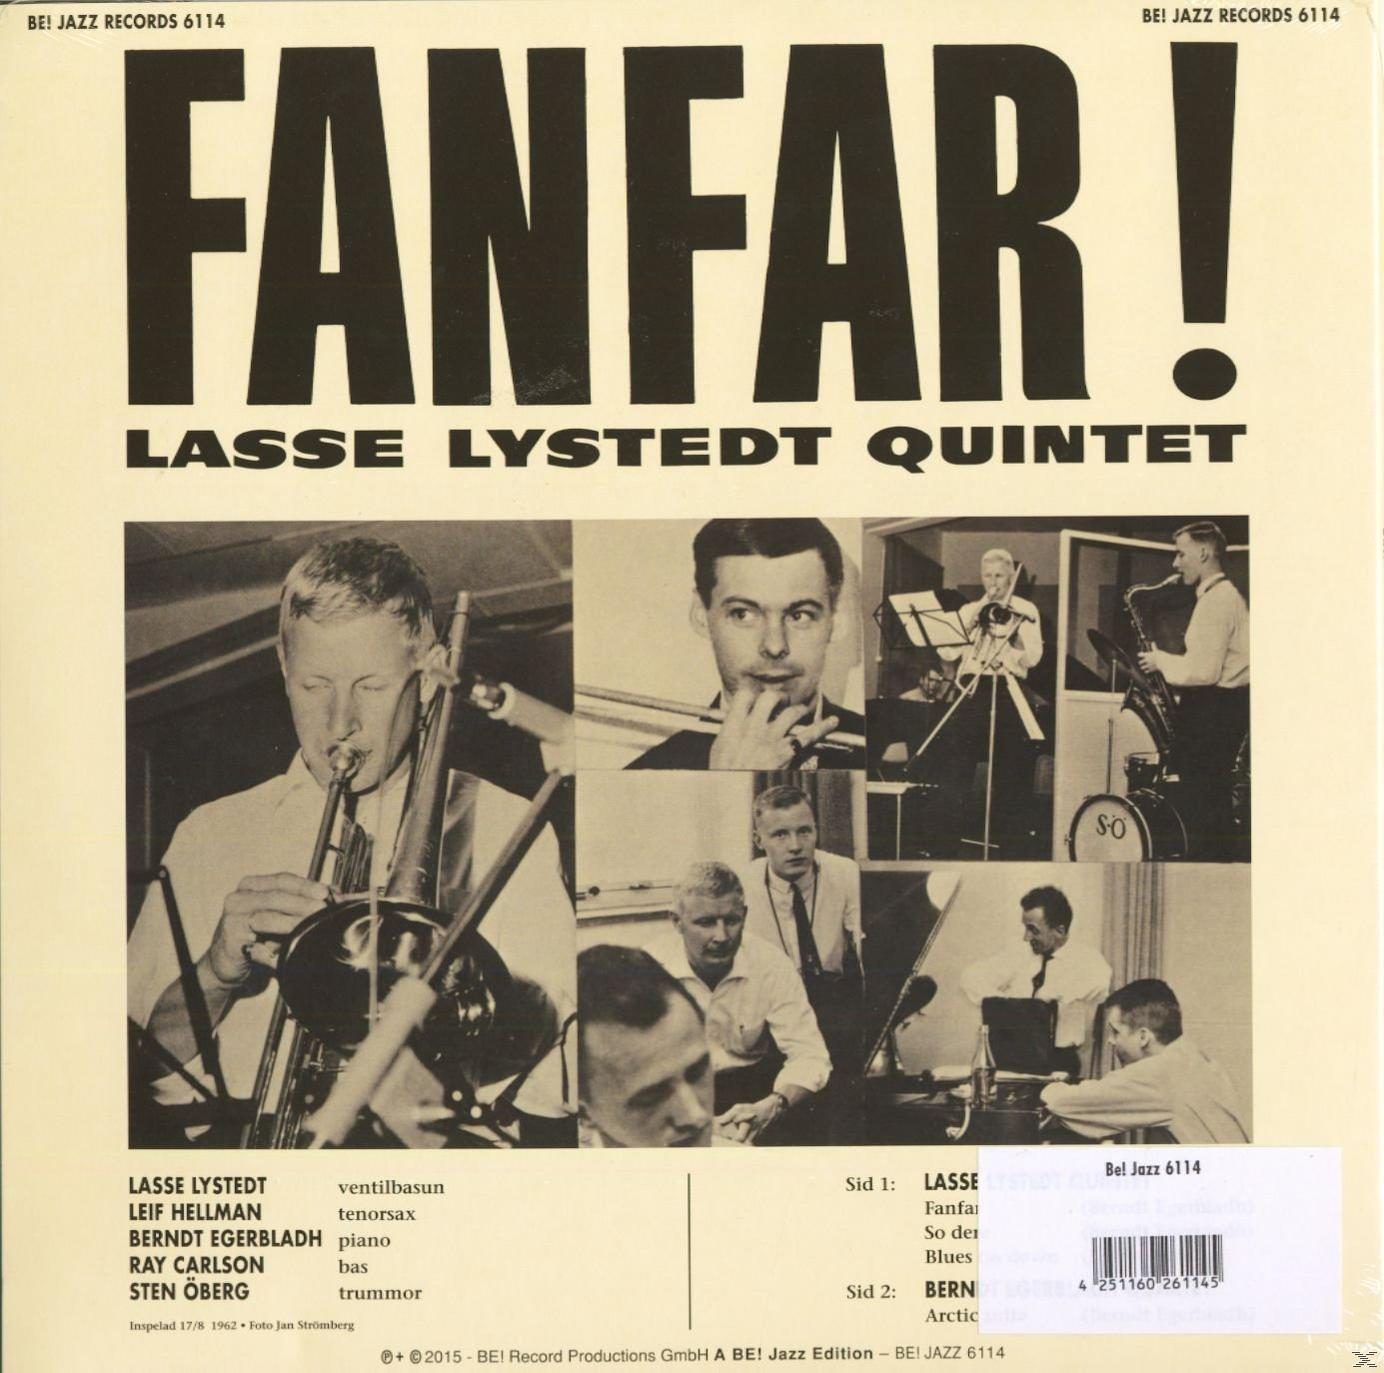 Lasse Lystedt (Vinyl) (10inch) Fanfar! - - Quintet